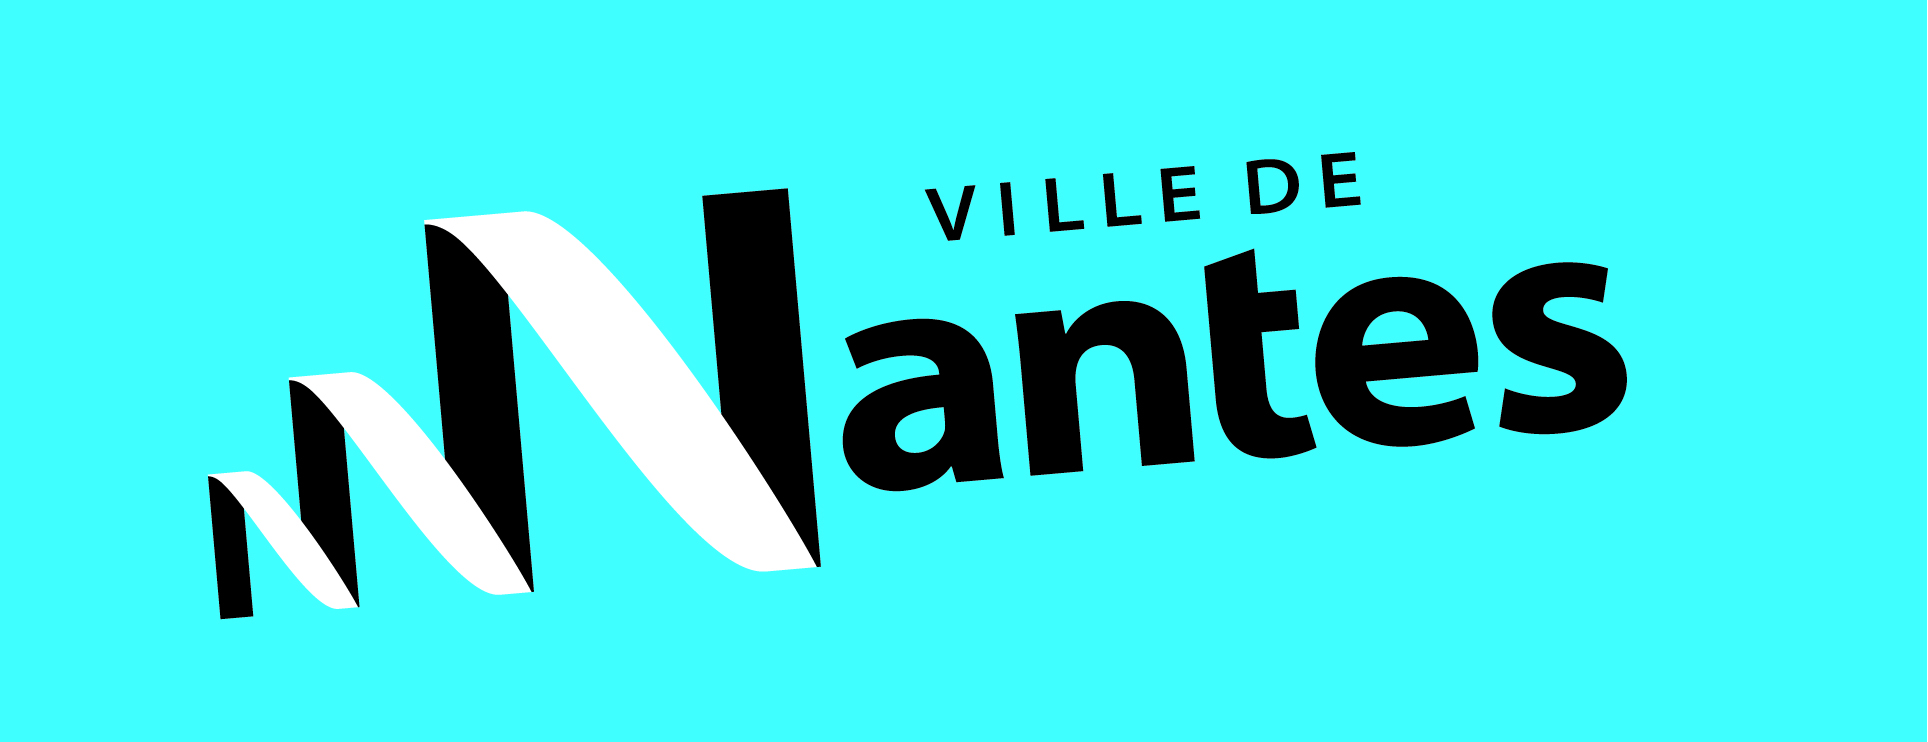 VDN logo partenaires bleu